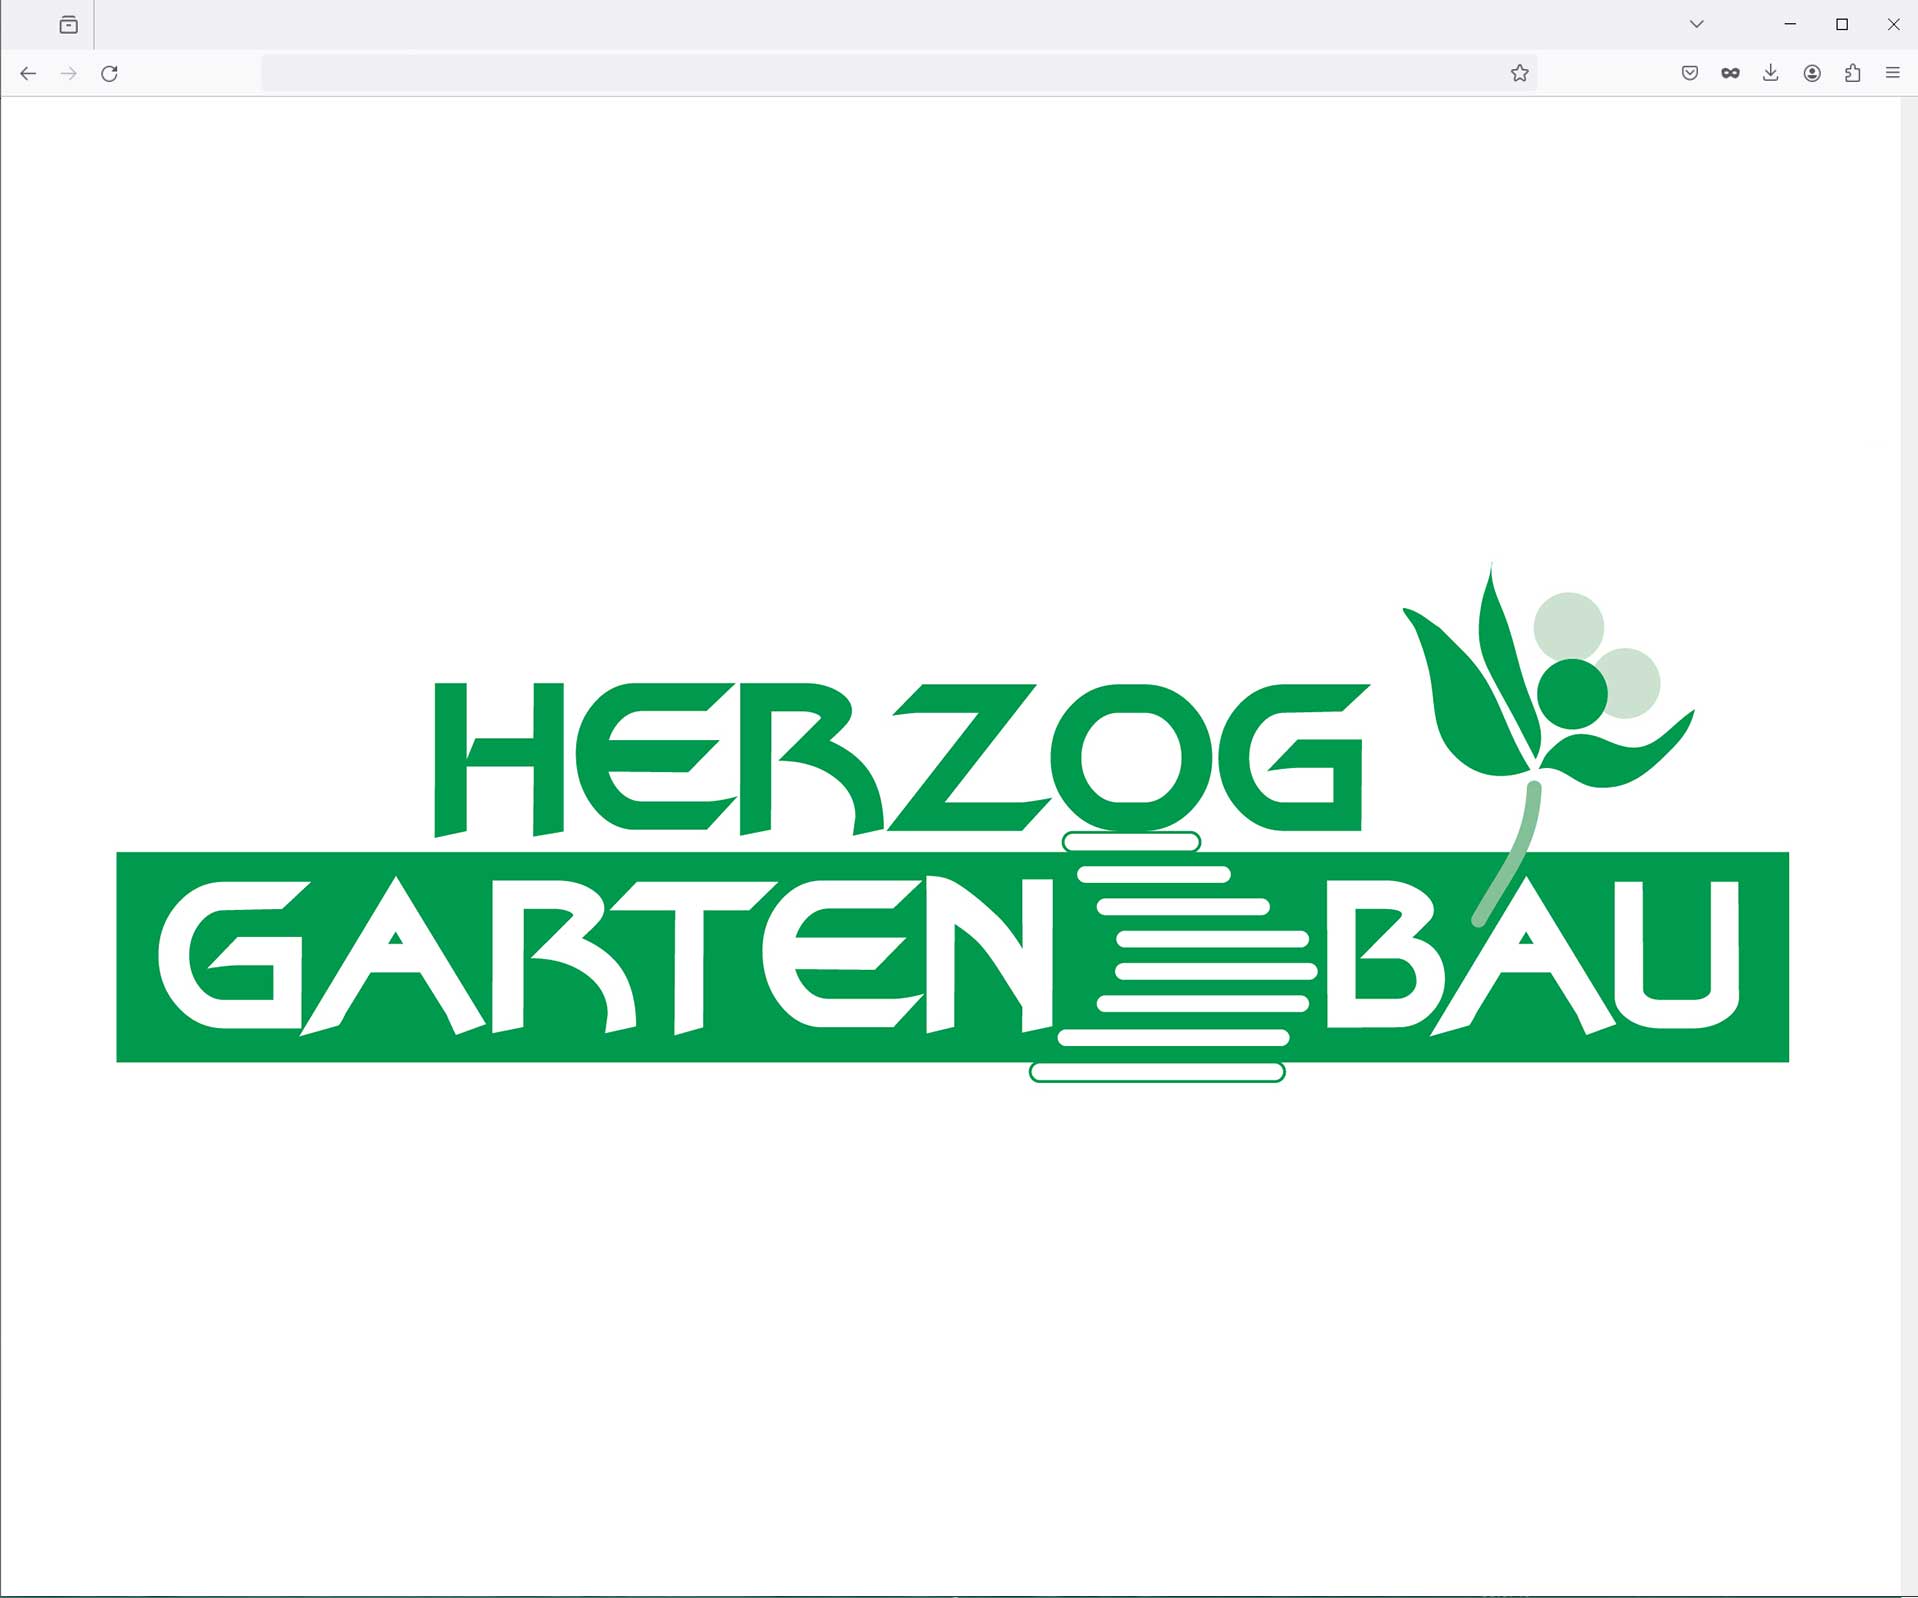 Herzog Gartenbau